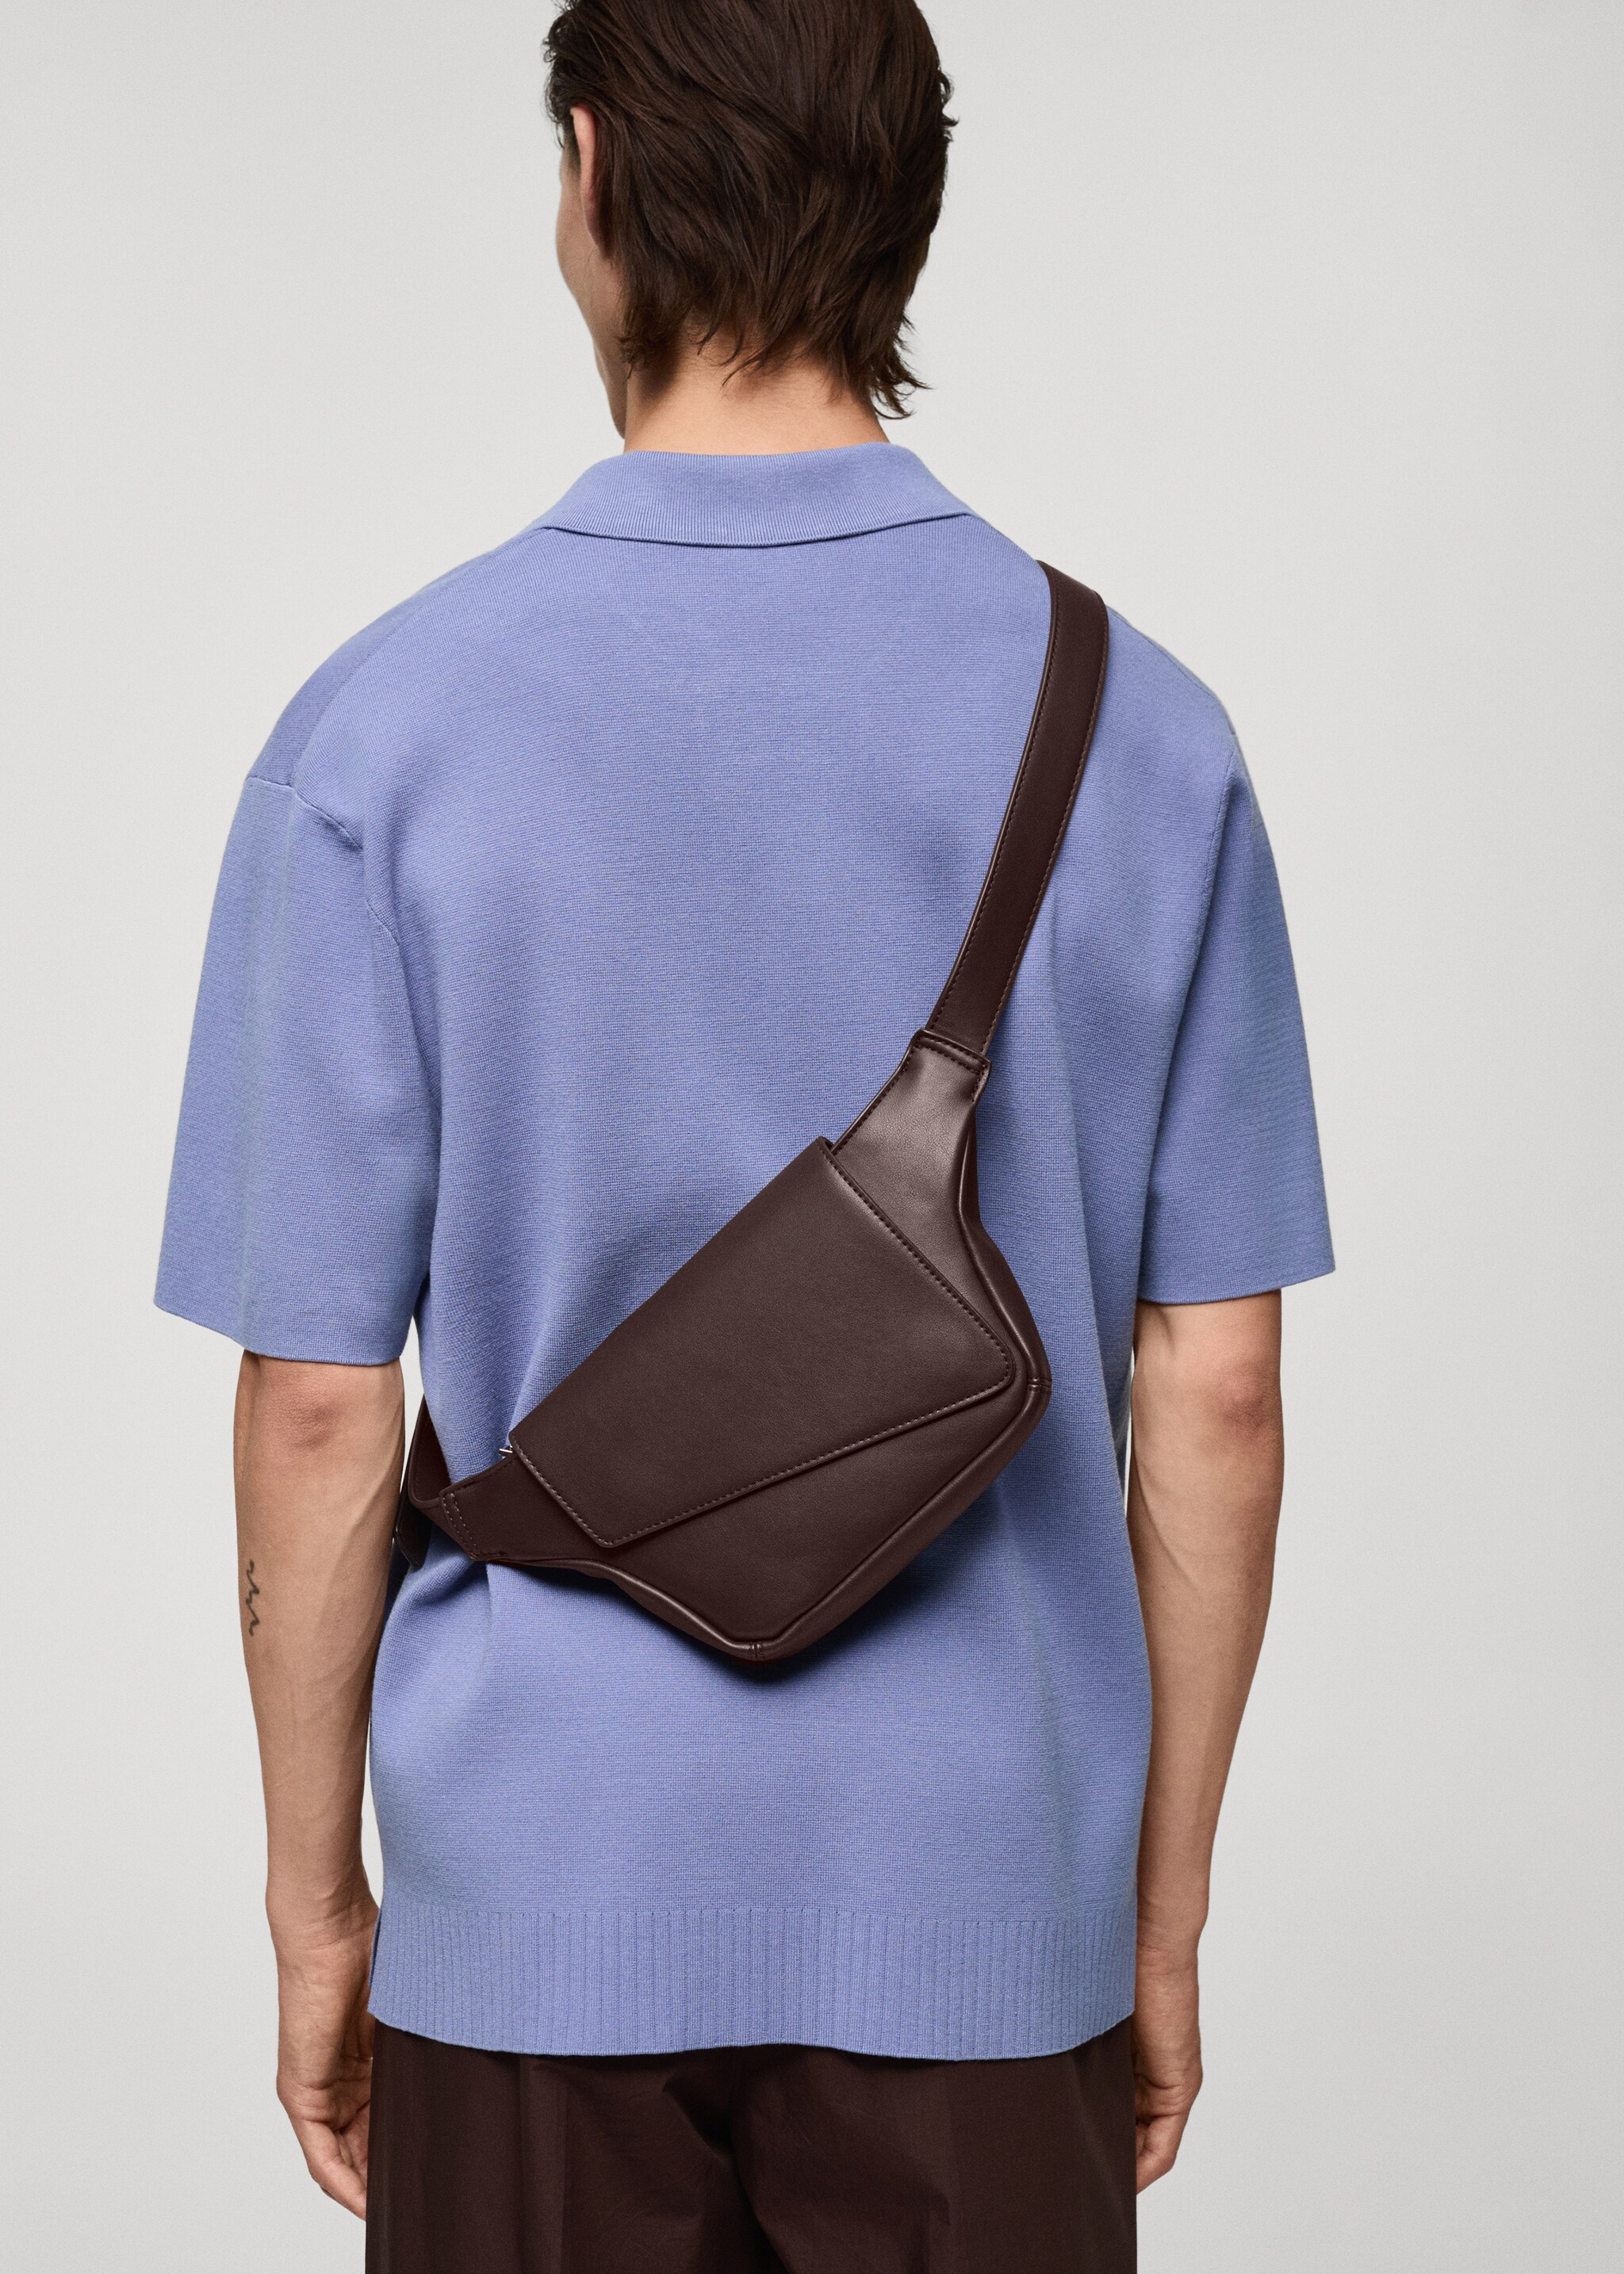 Поясная сумка с плечевым ремнем из искусственной гранулированной кожи - Общий план